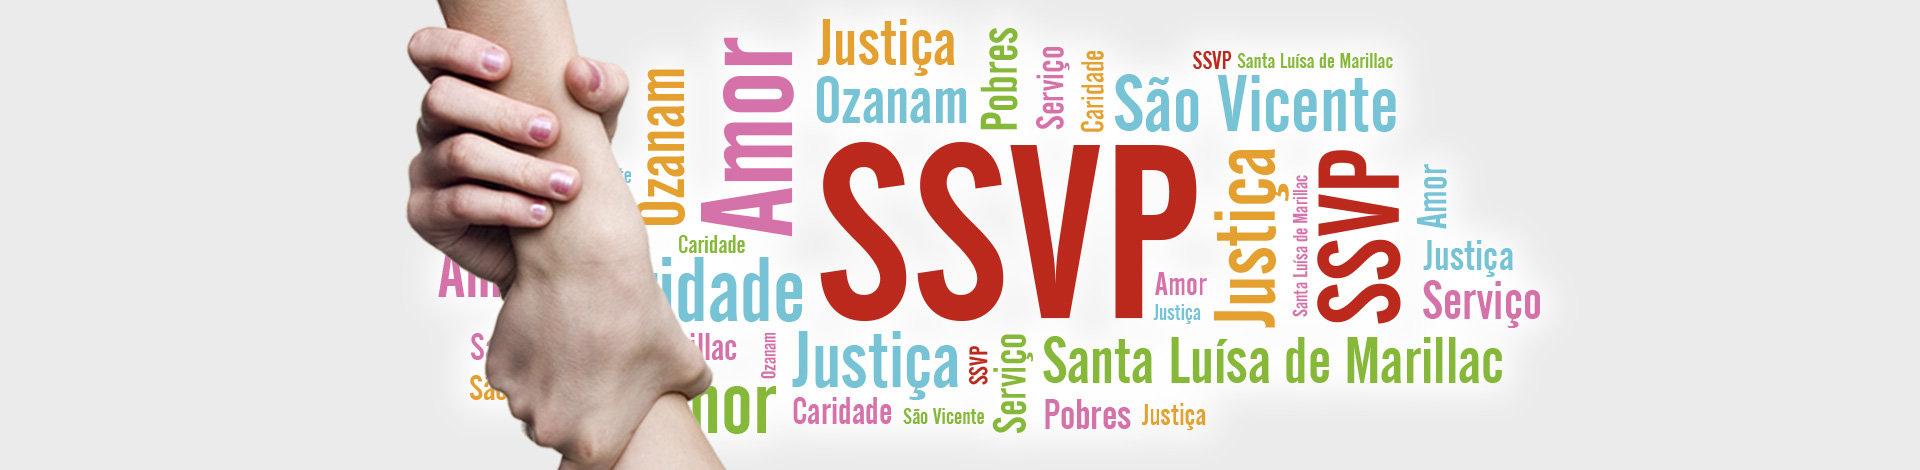 SSVP - Conselho Metropolitano de Formiga/MG